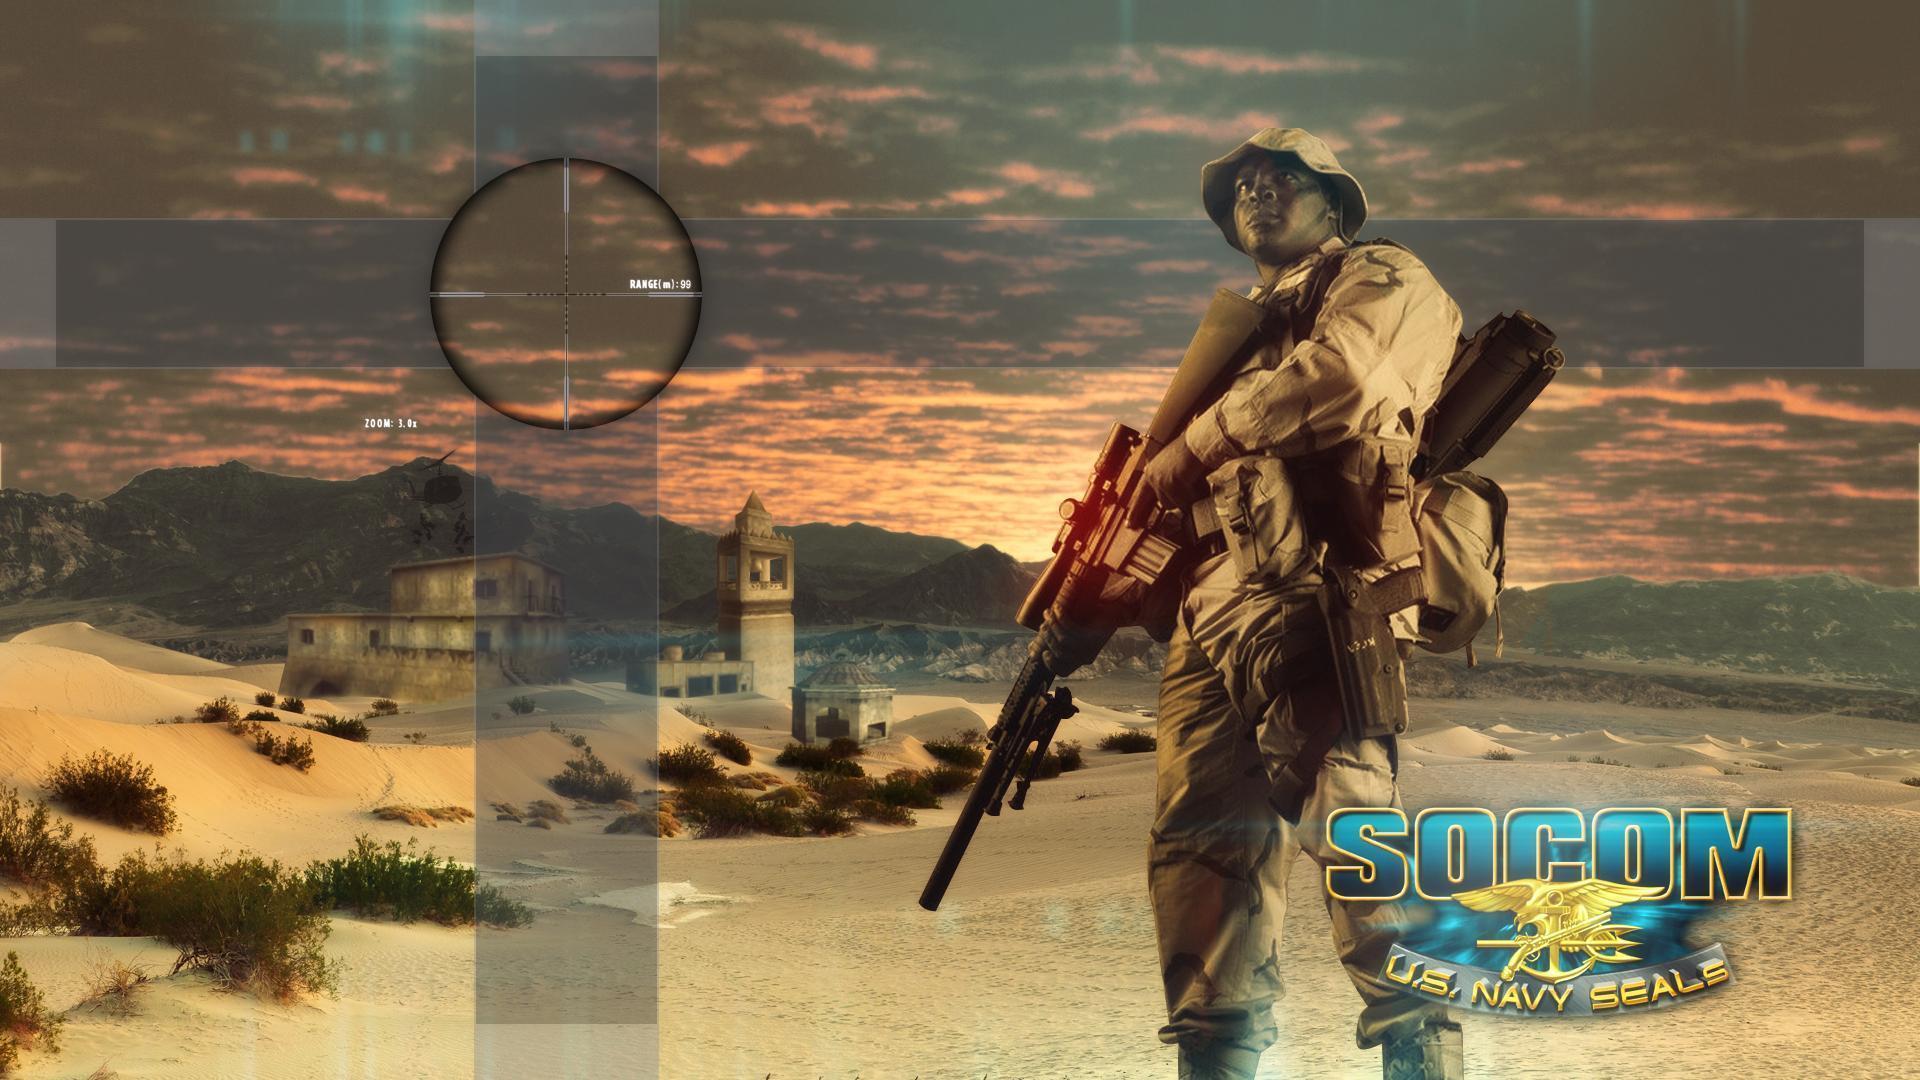 SOCOM 1 & 2 Wallpaper (PS3 PC)